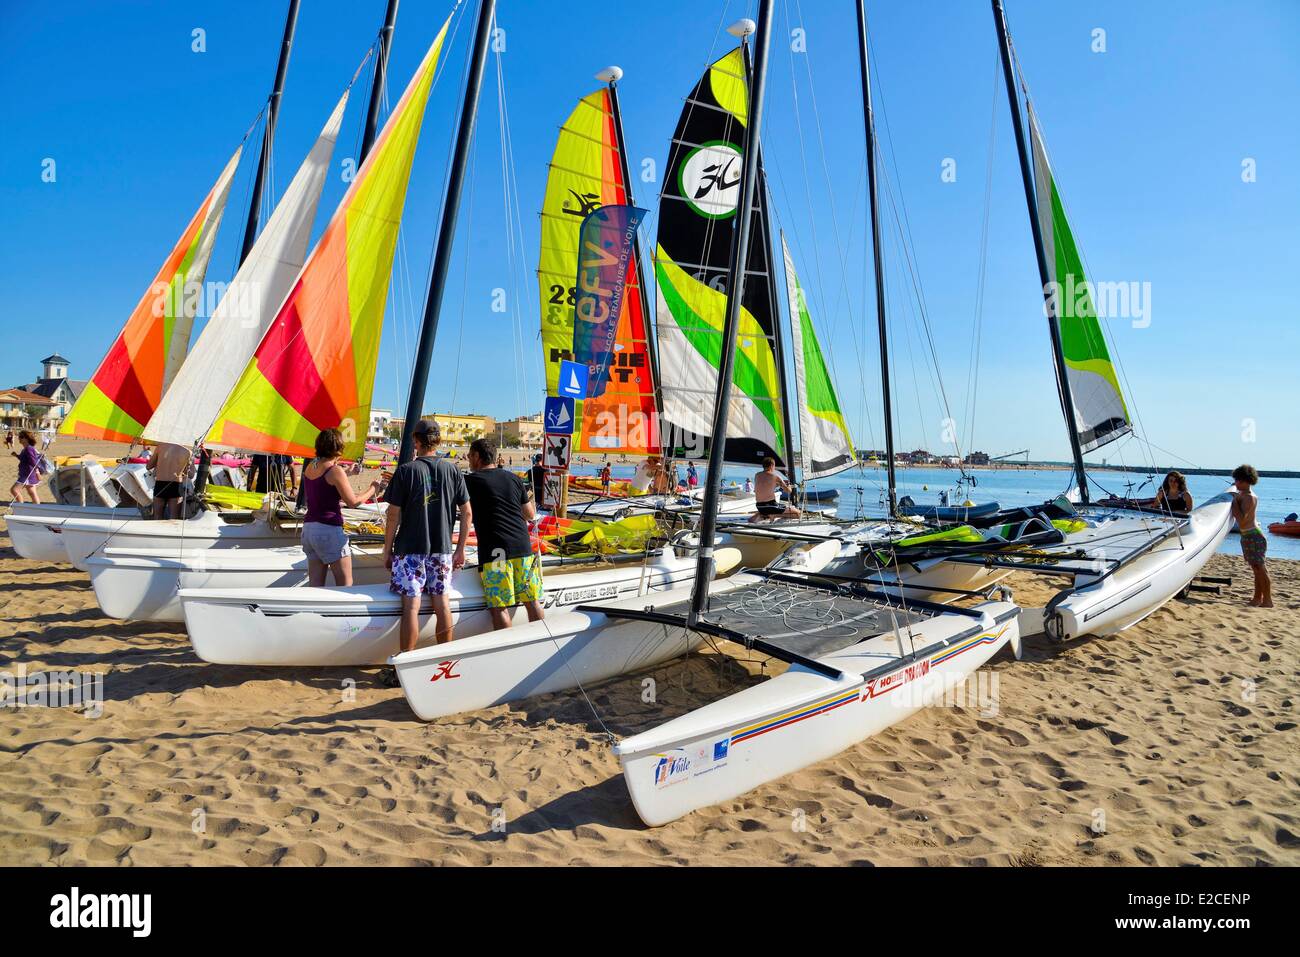 La France, l'Hérault, Valras plage, catamarans sur le sable d'une plage  avant leur lancement Photo Stock - Alamy